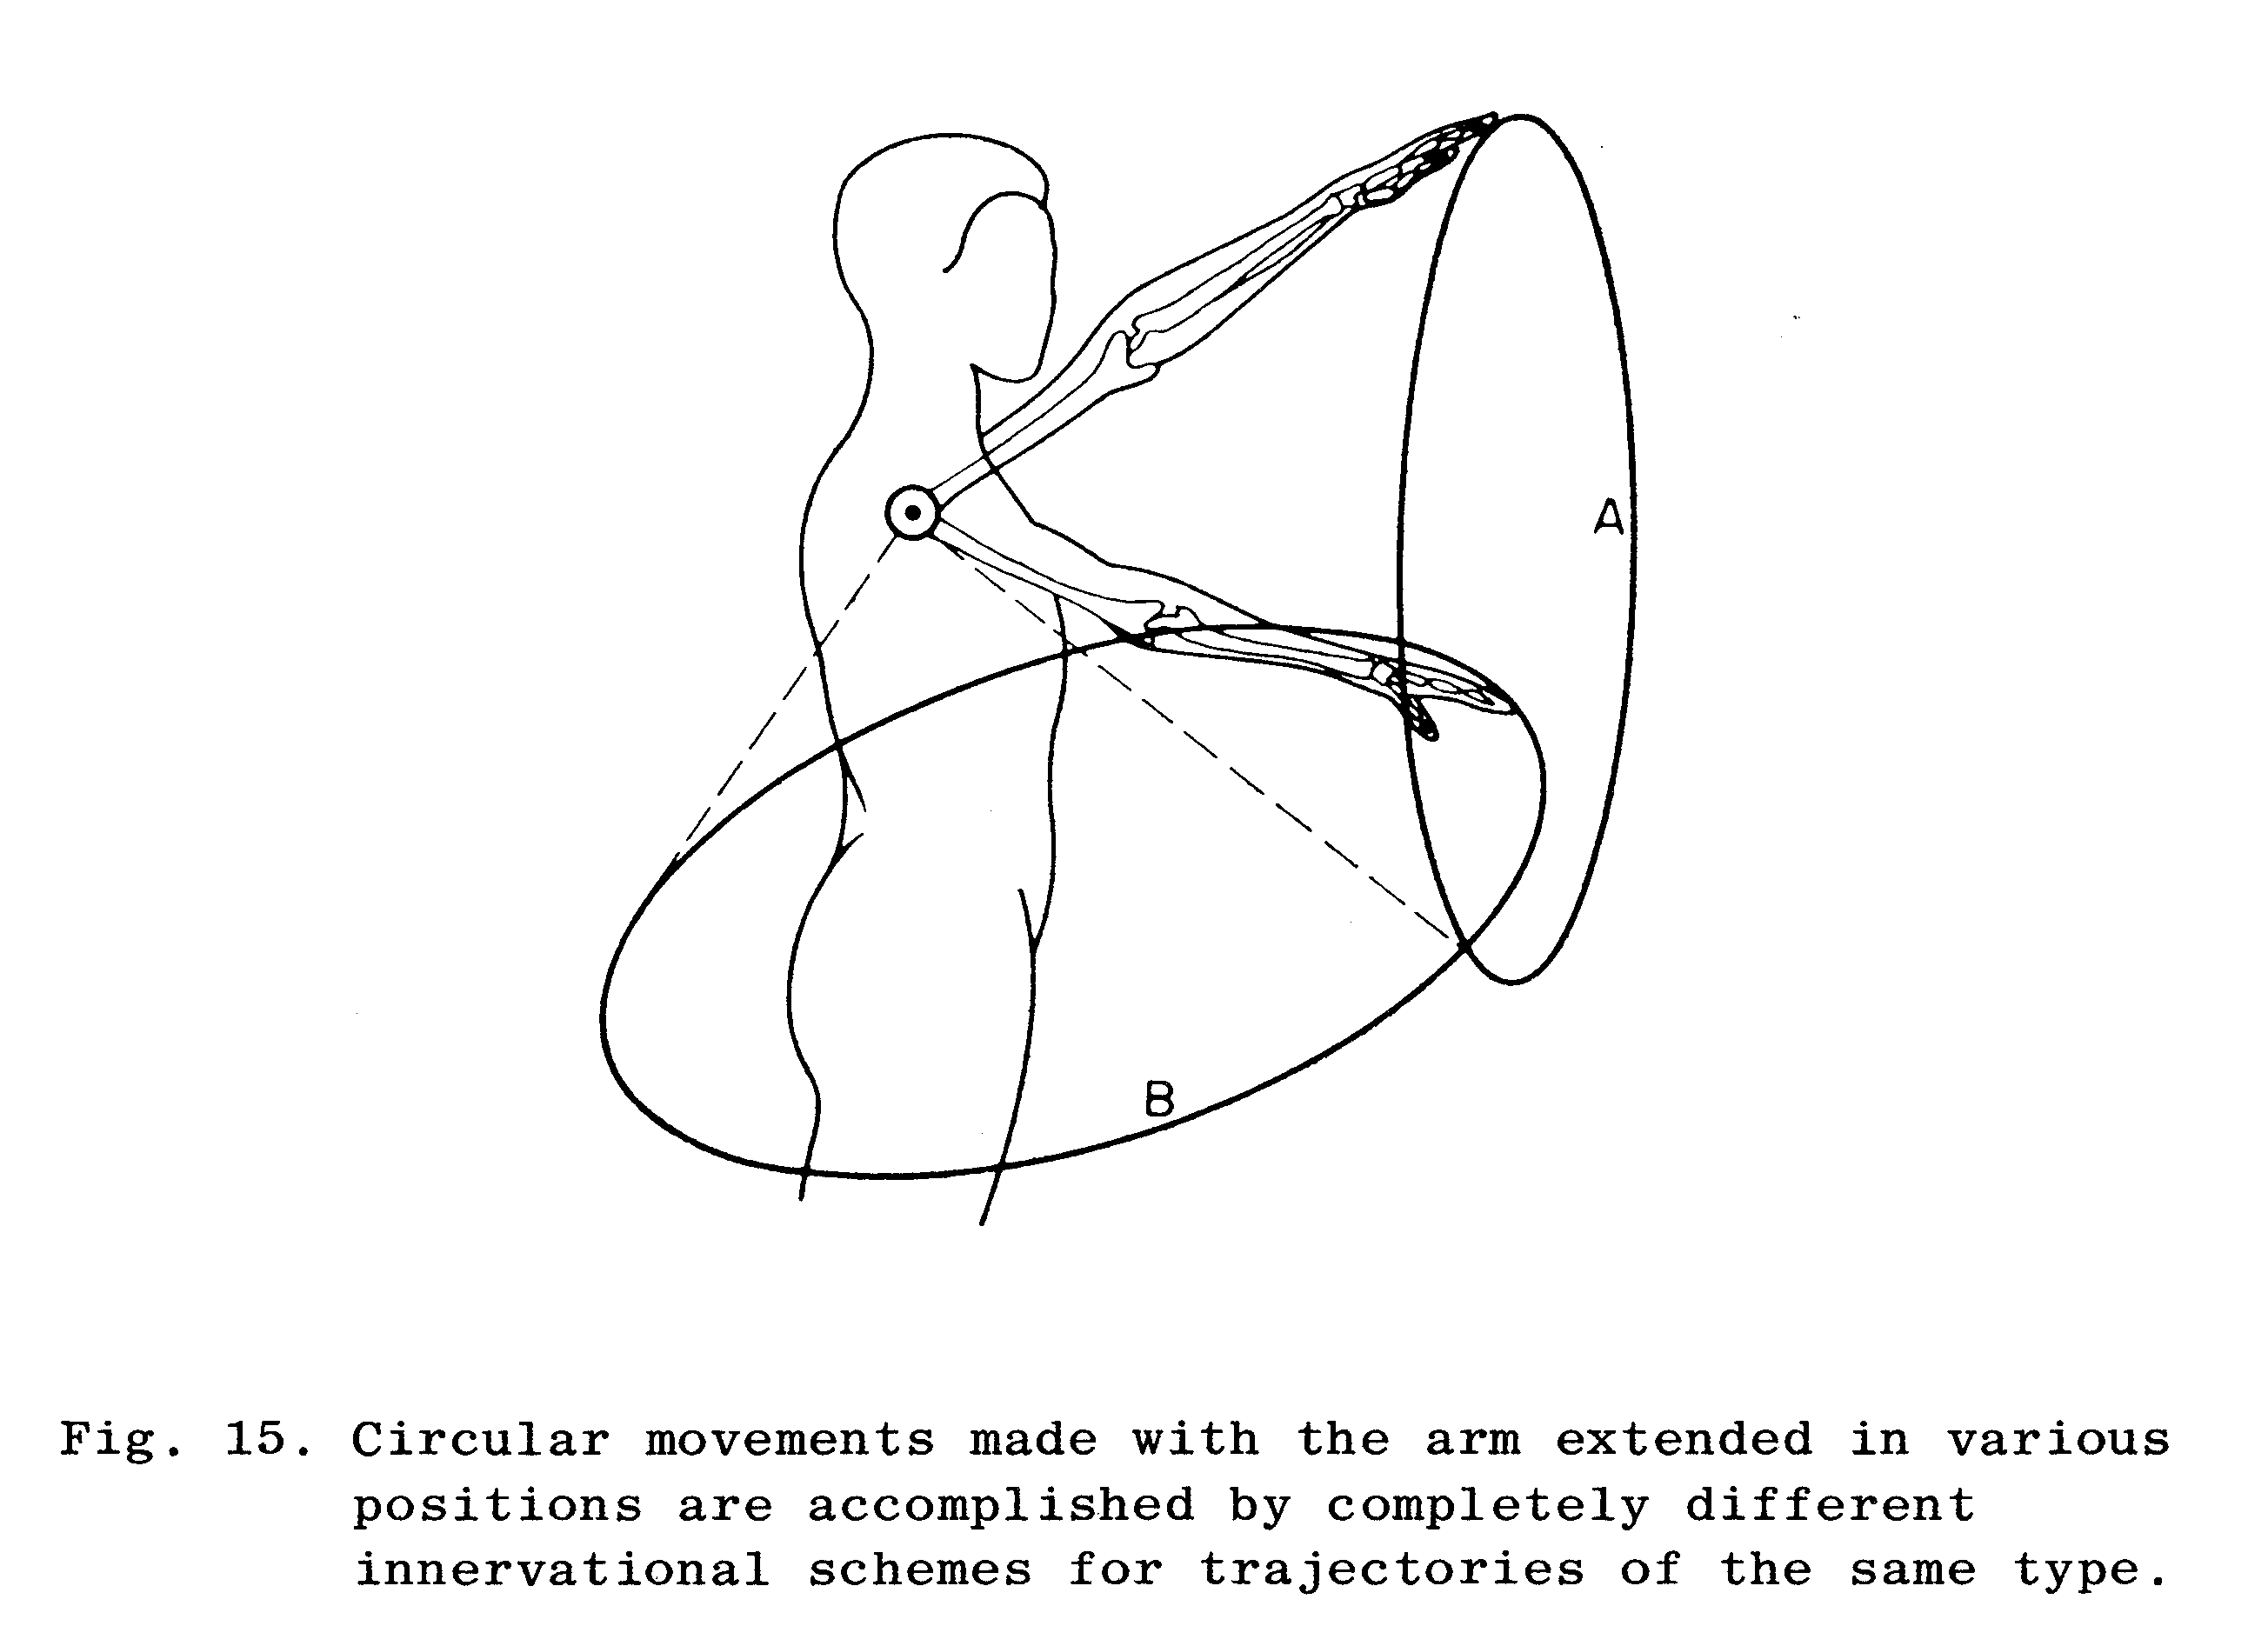 Figure 3: Cirkelbevægelser lavet med armen strakt i forskellige positioner, udføres vha. forskellige muskler. Figuren illustrerer princippet om equal simplicity (Bernstein, 1984b, side 84).